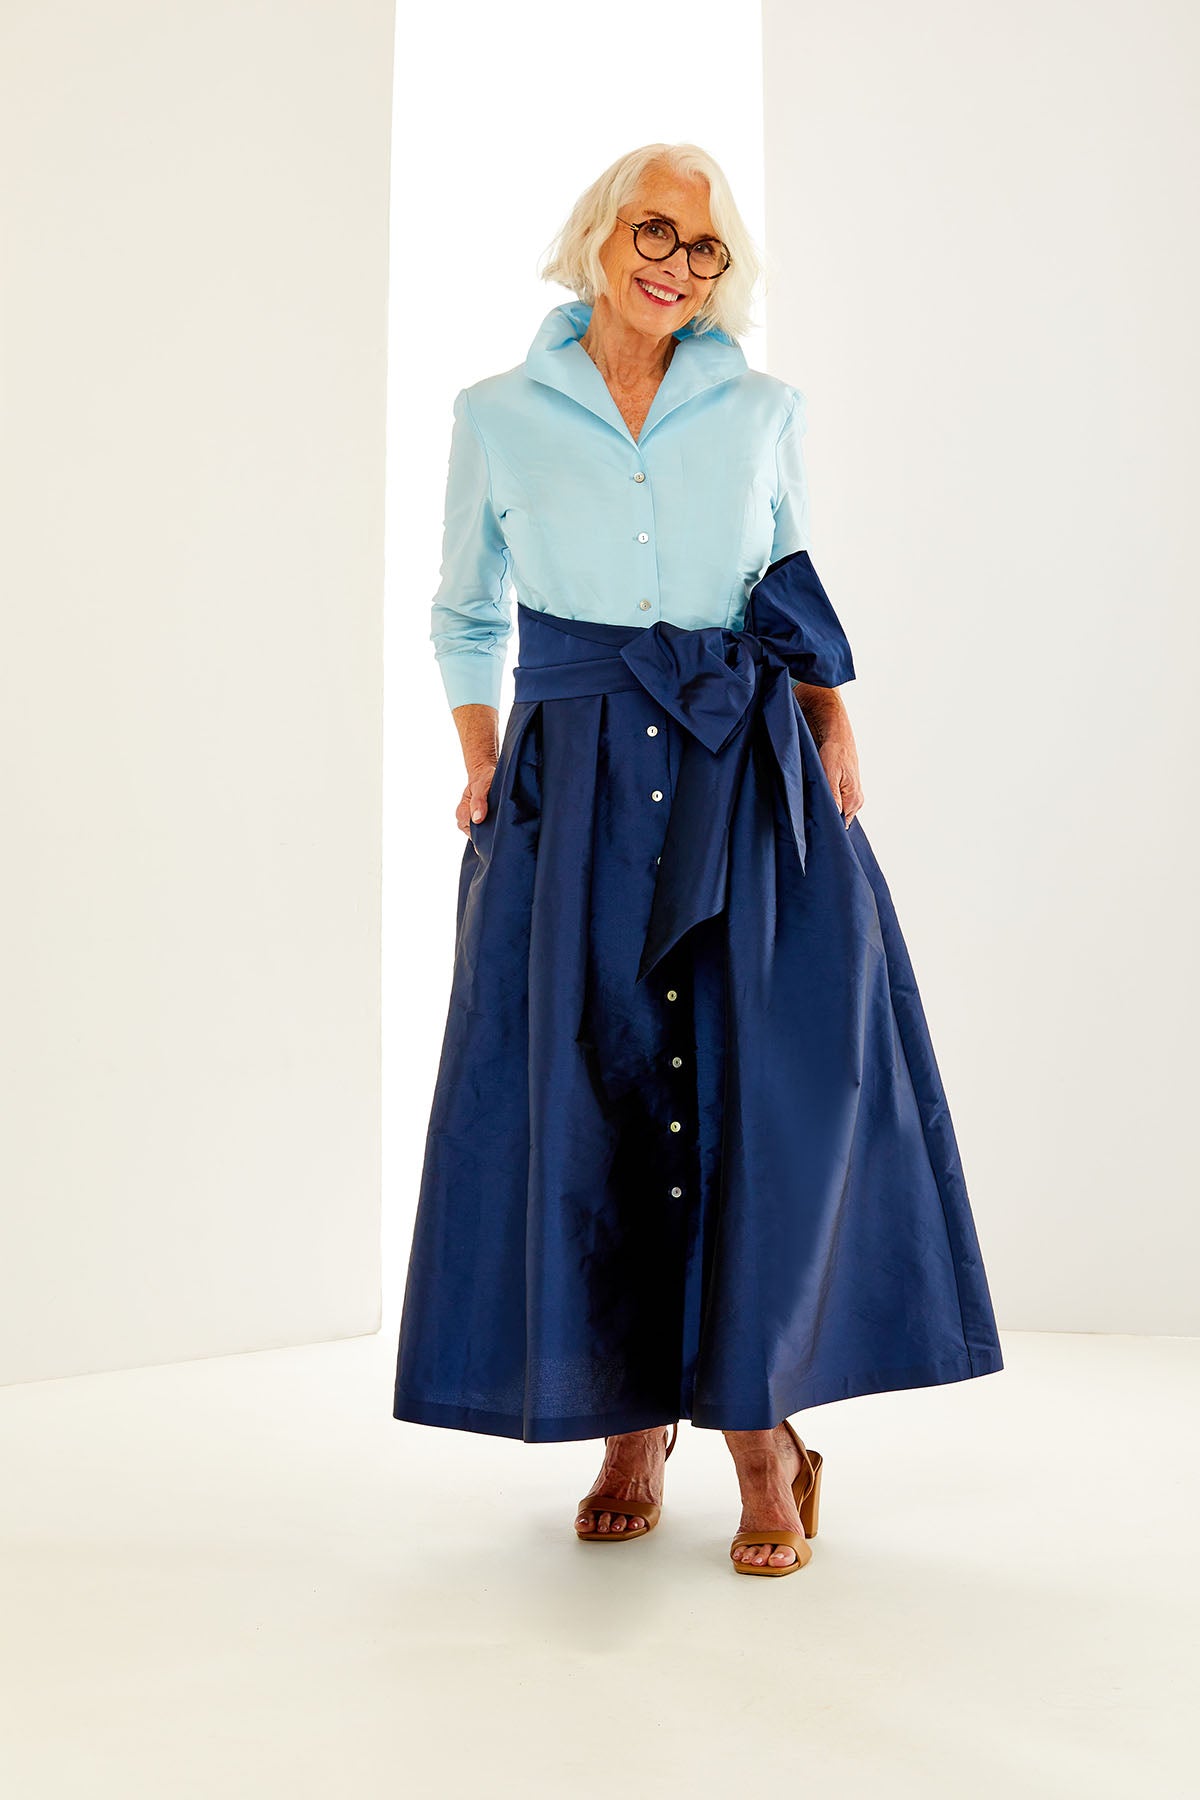 Woman in light blue/navy dress